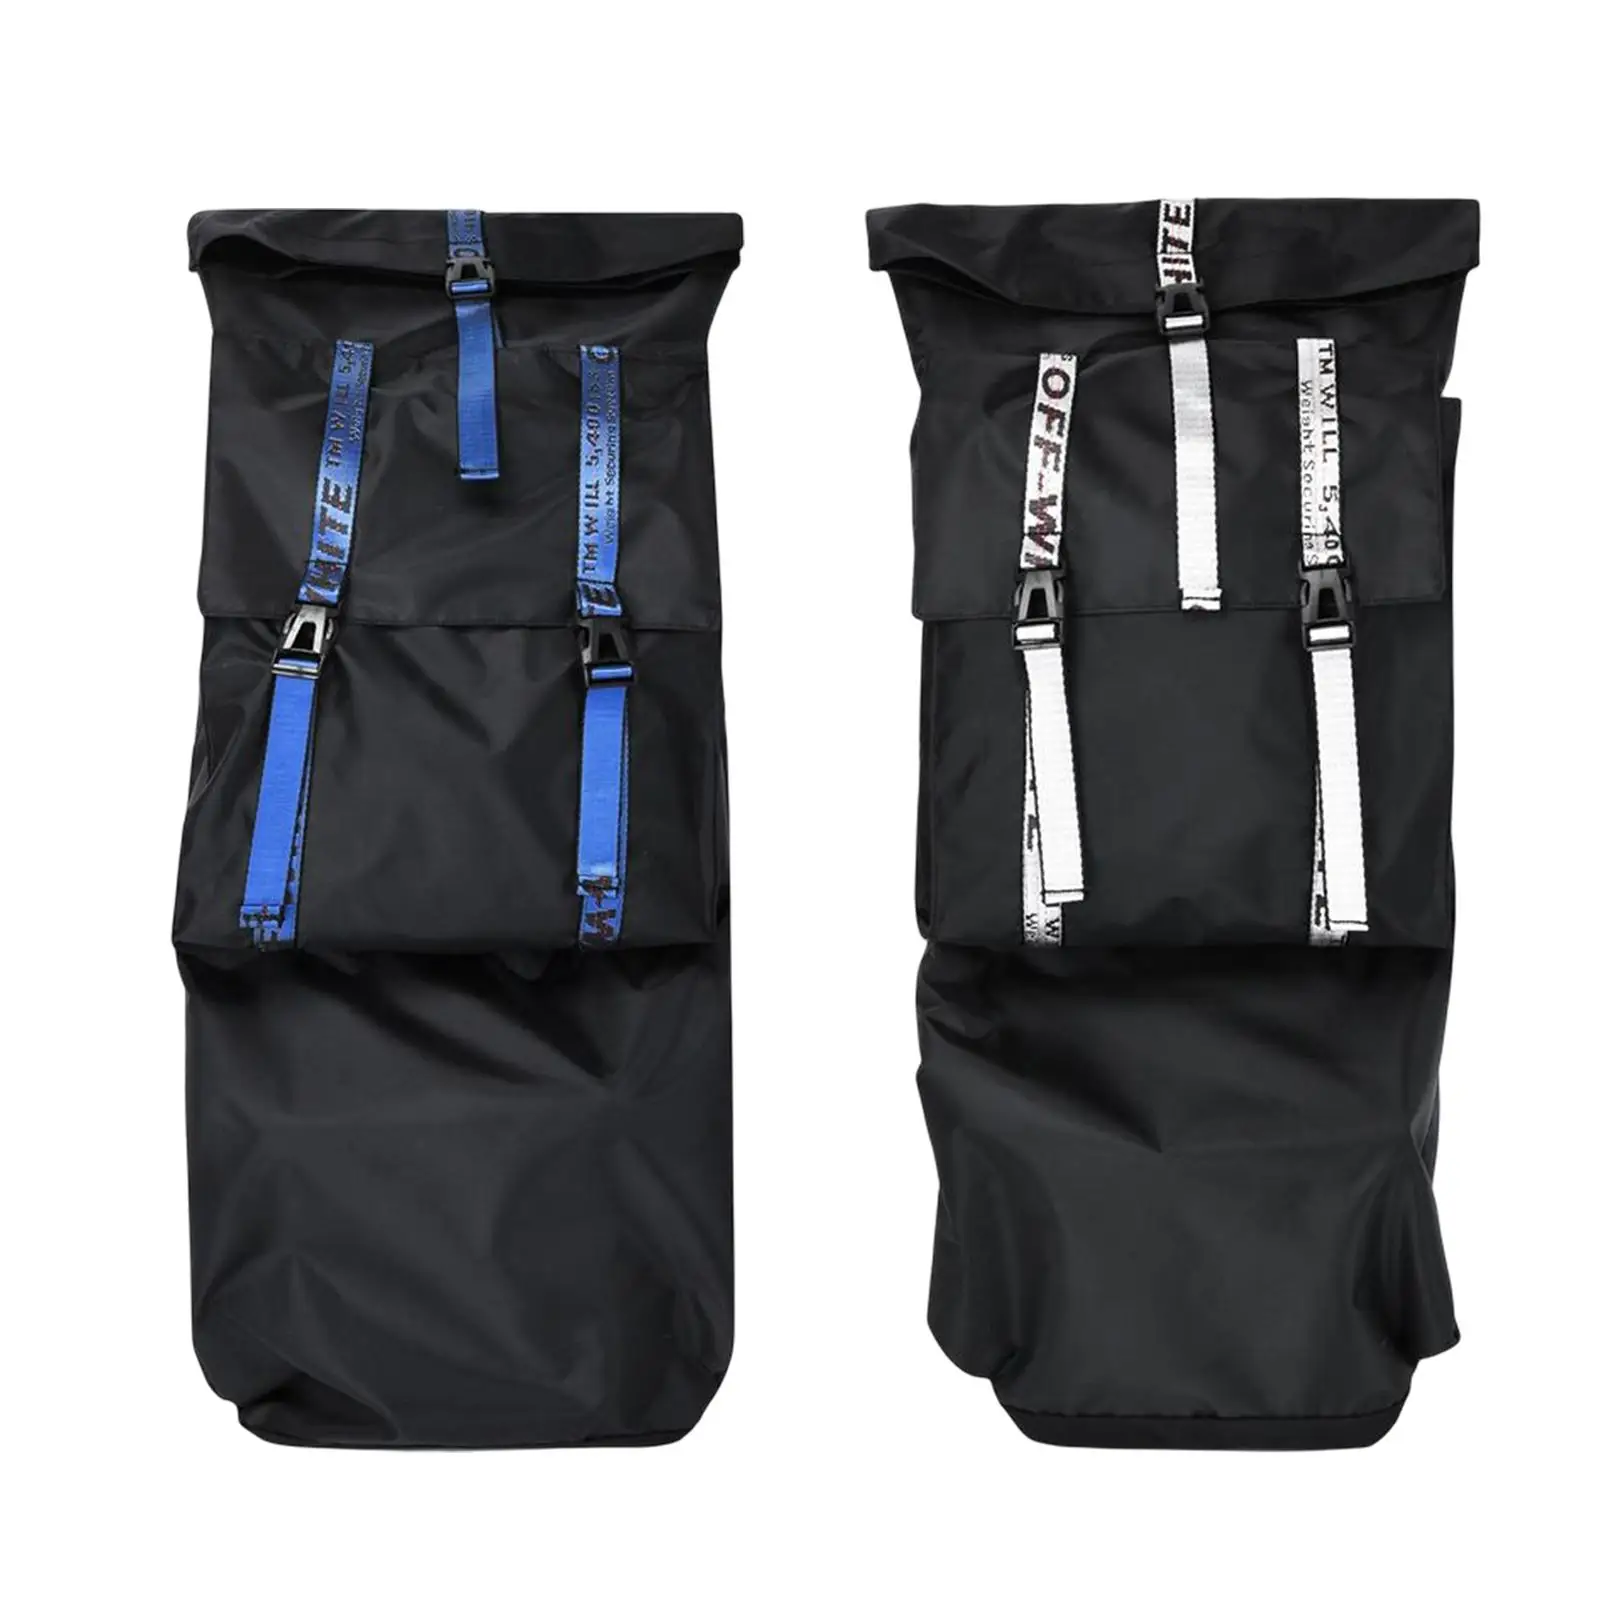 Skateboard Backpack Bag Longboard Carry Case with Adjustable Shoulder Strap